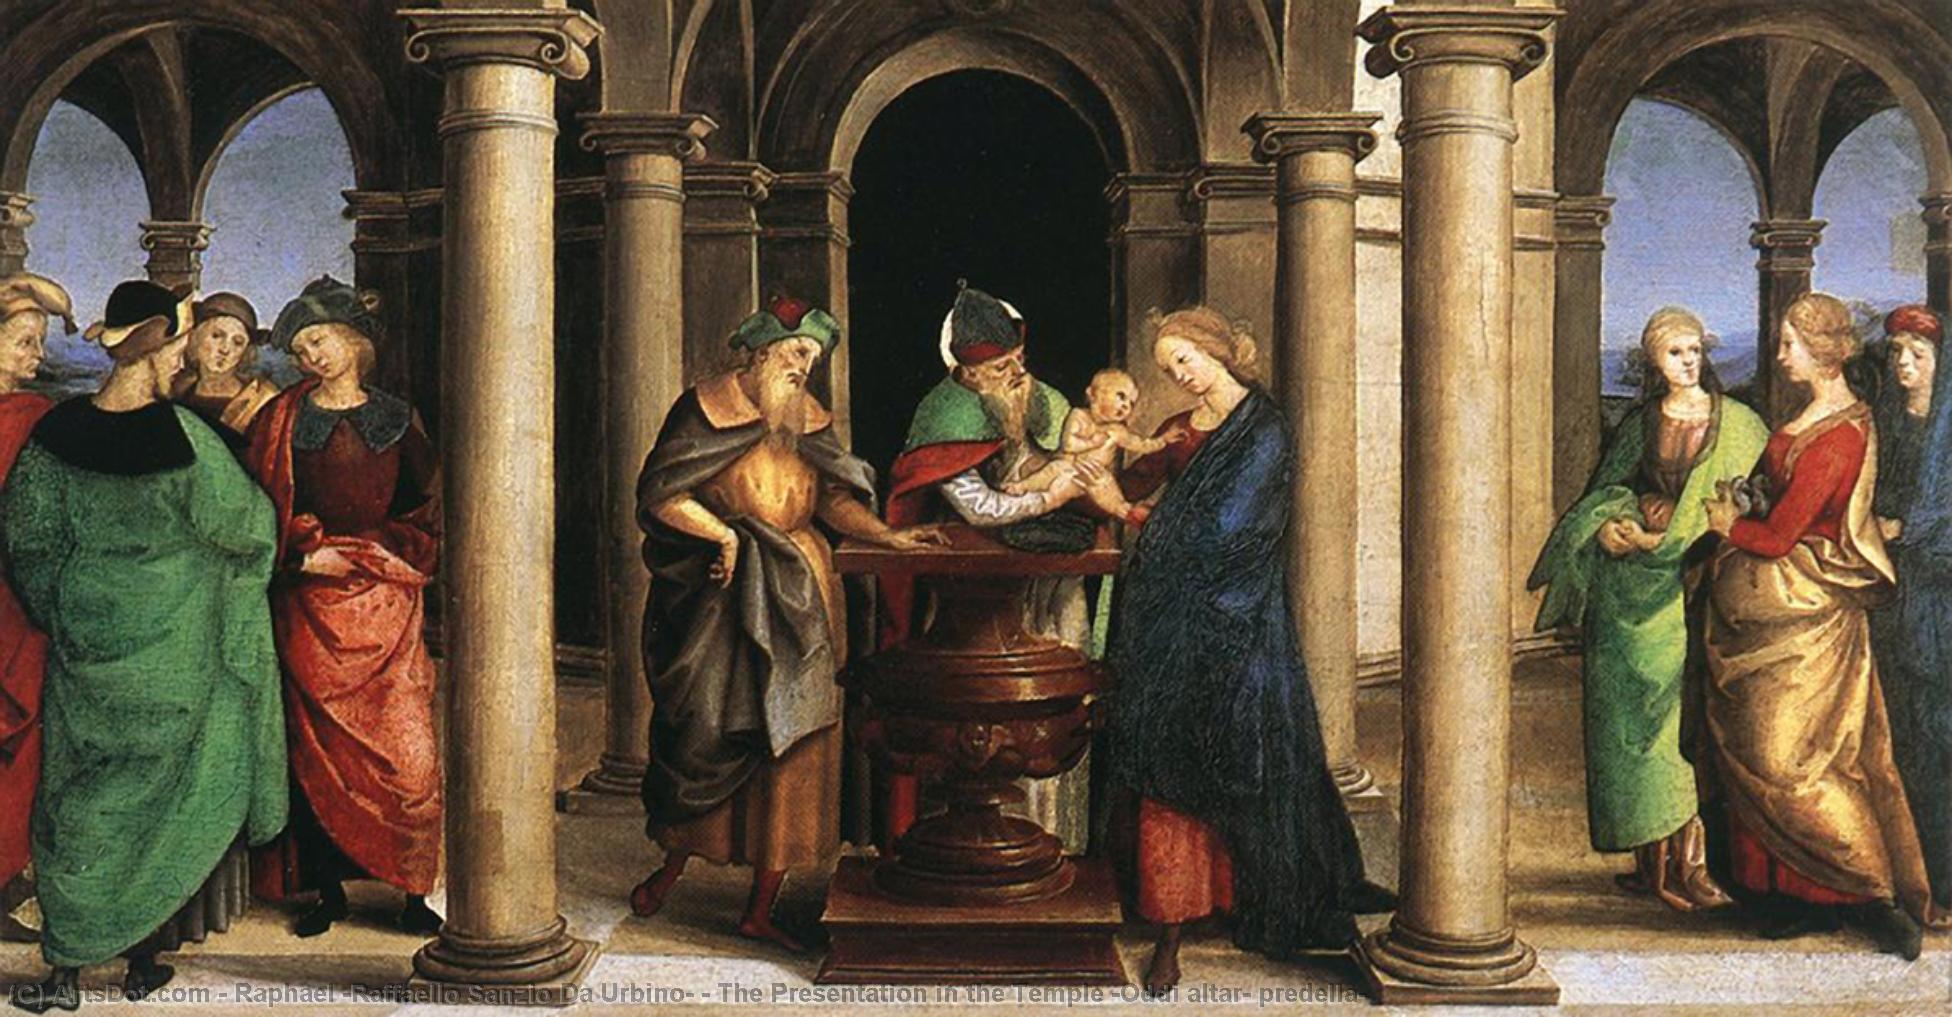 WikiOO.org - Güzel Sanatlar Ansiklopedisi - Resim, Resimler Raphael (Raffaello Sanzio Da Urbino) - The Presentation in the Temple (Oddi altar, predella)